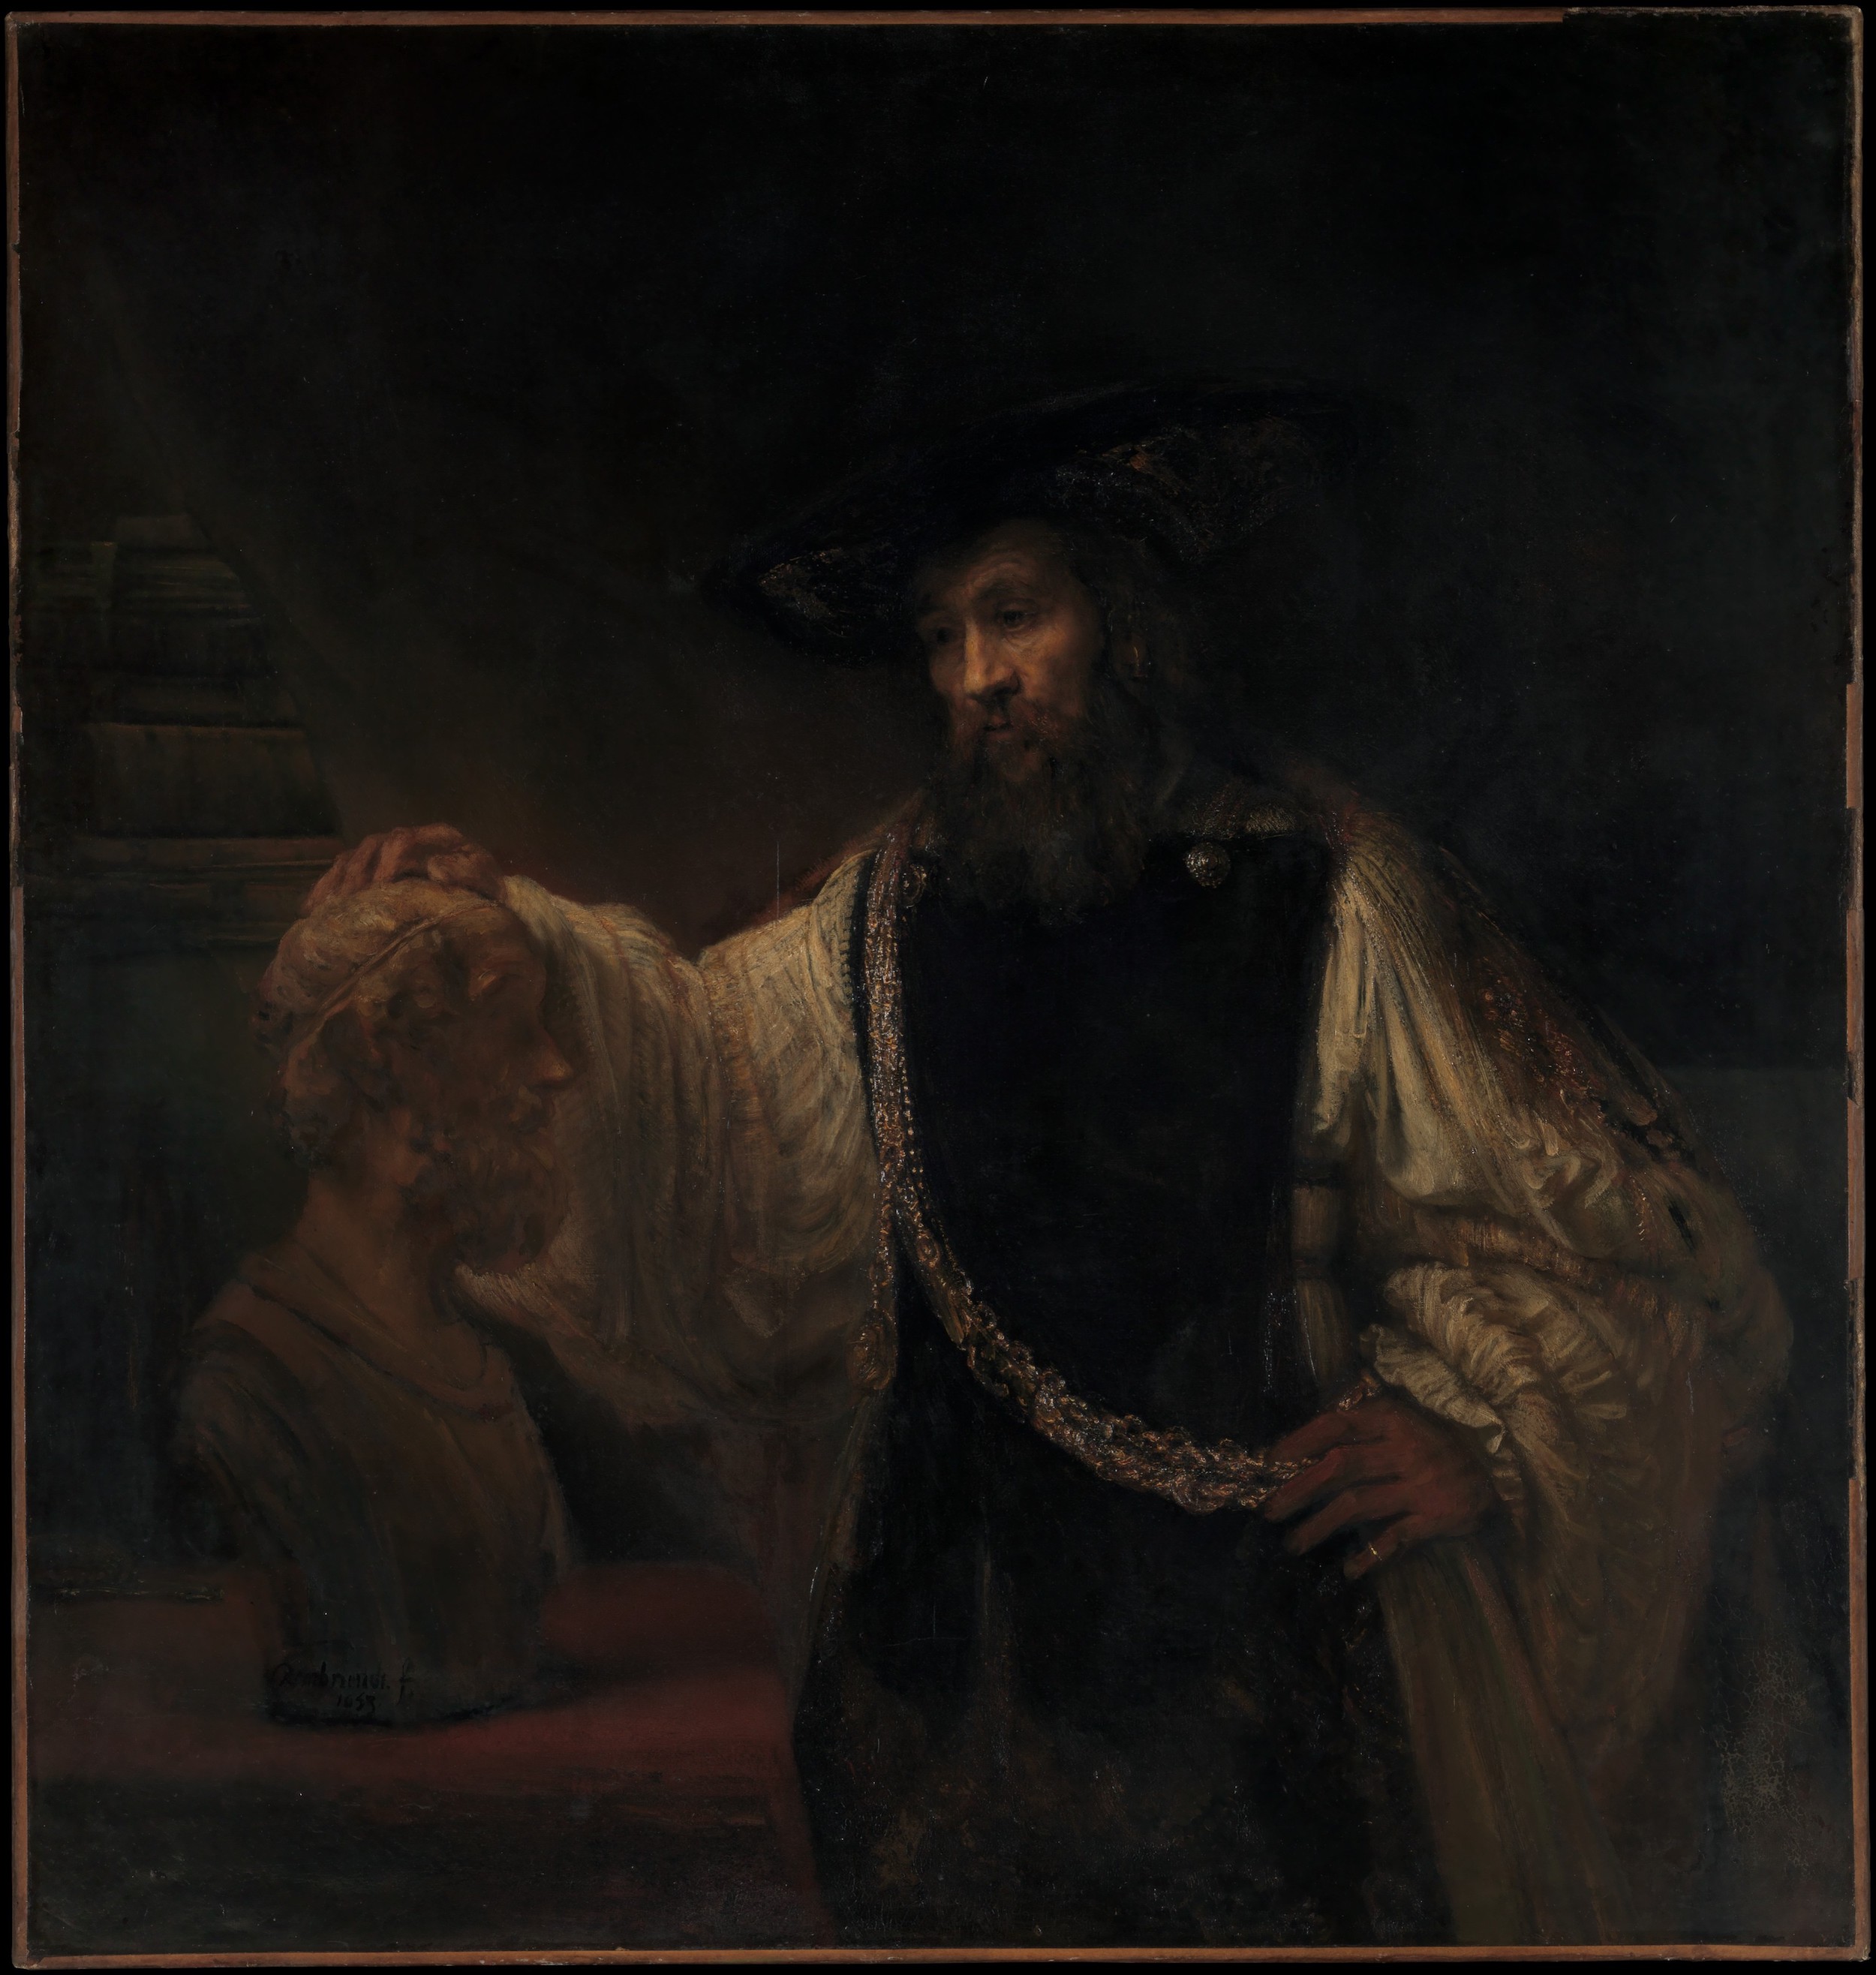 Aristotle with a Bust of Homer by Rembrandt van Rijn - 1653 - 143.5 x 136.5 cm Metropolitan Museum of Art